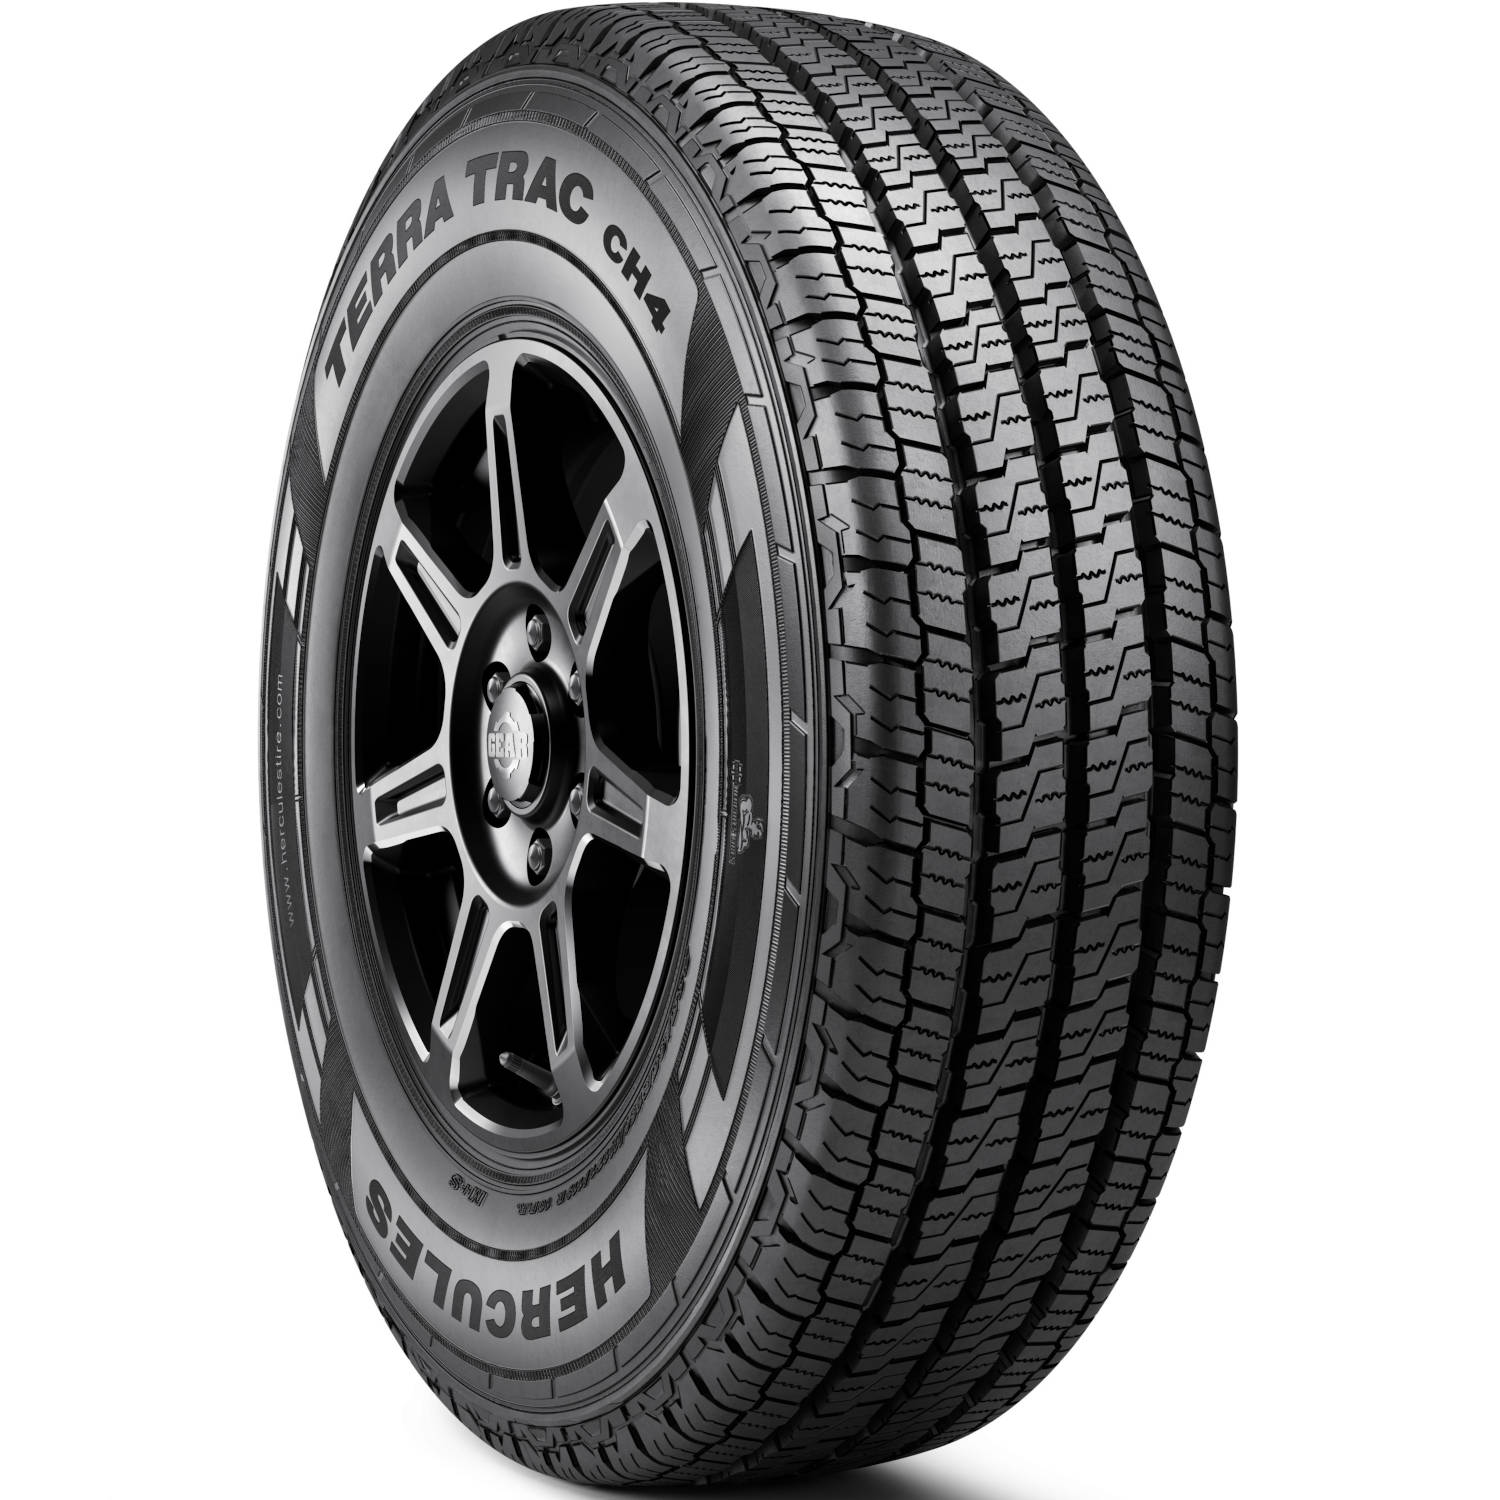 HERCULES TERRA TRAC CH4 LT265/70R17 (31.6X10.4R 17) Tires